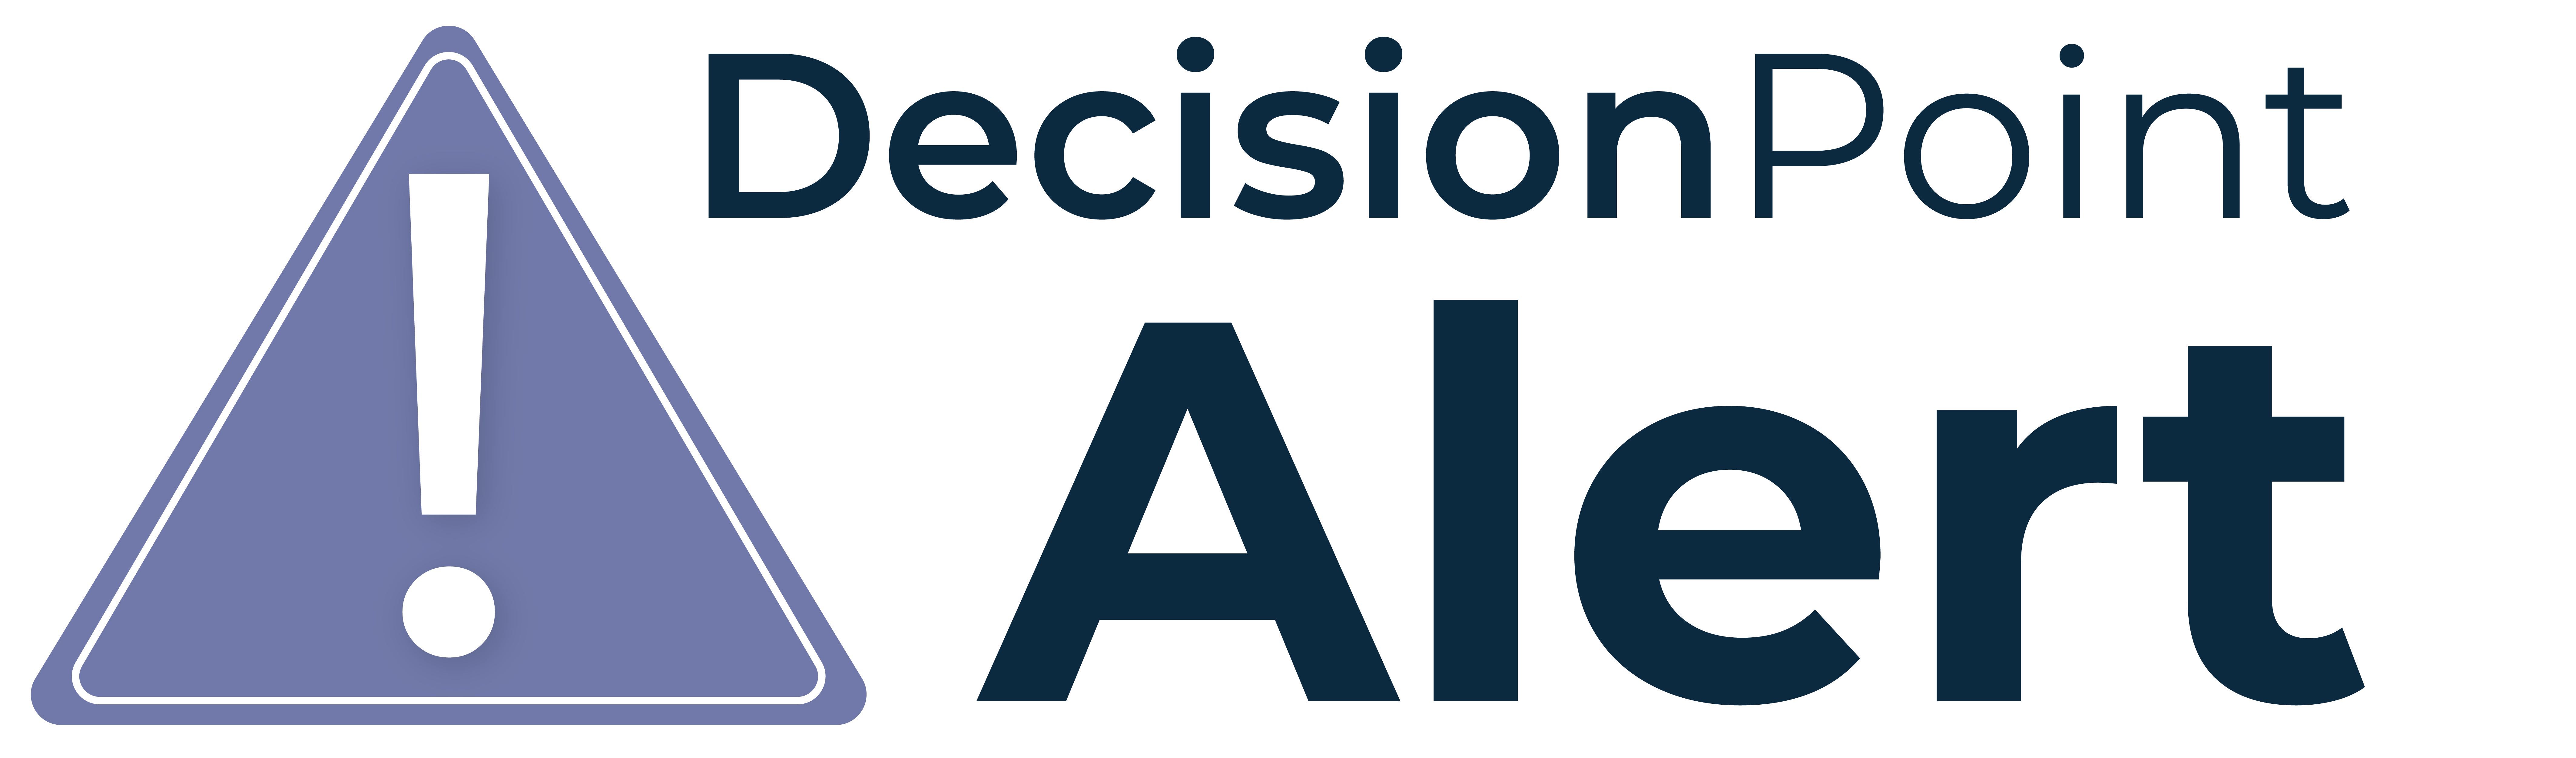 DecisionPoint Alert logo with text description